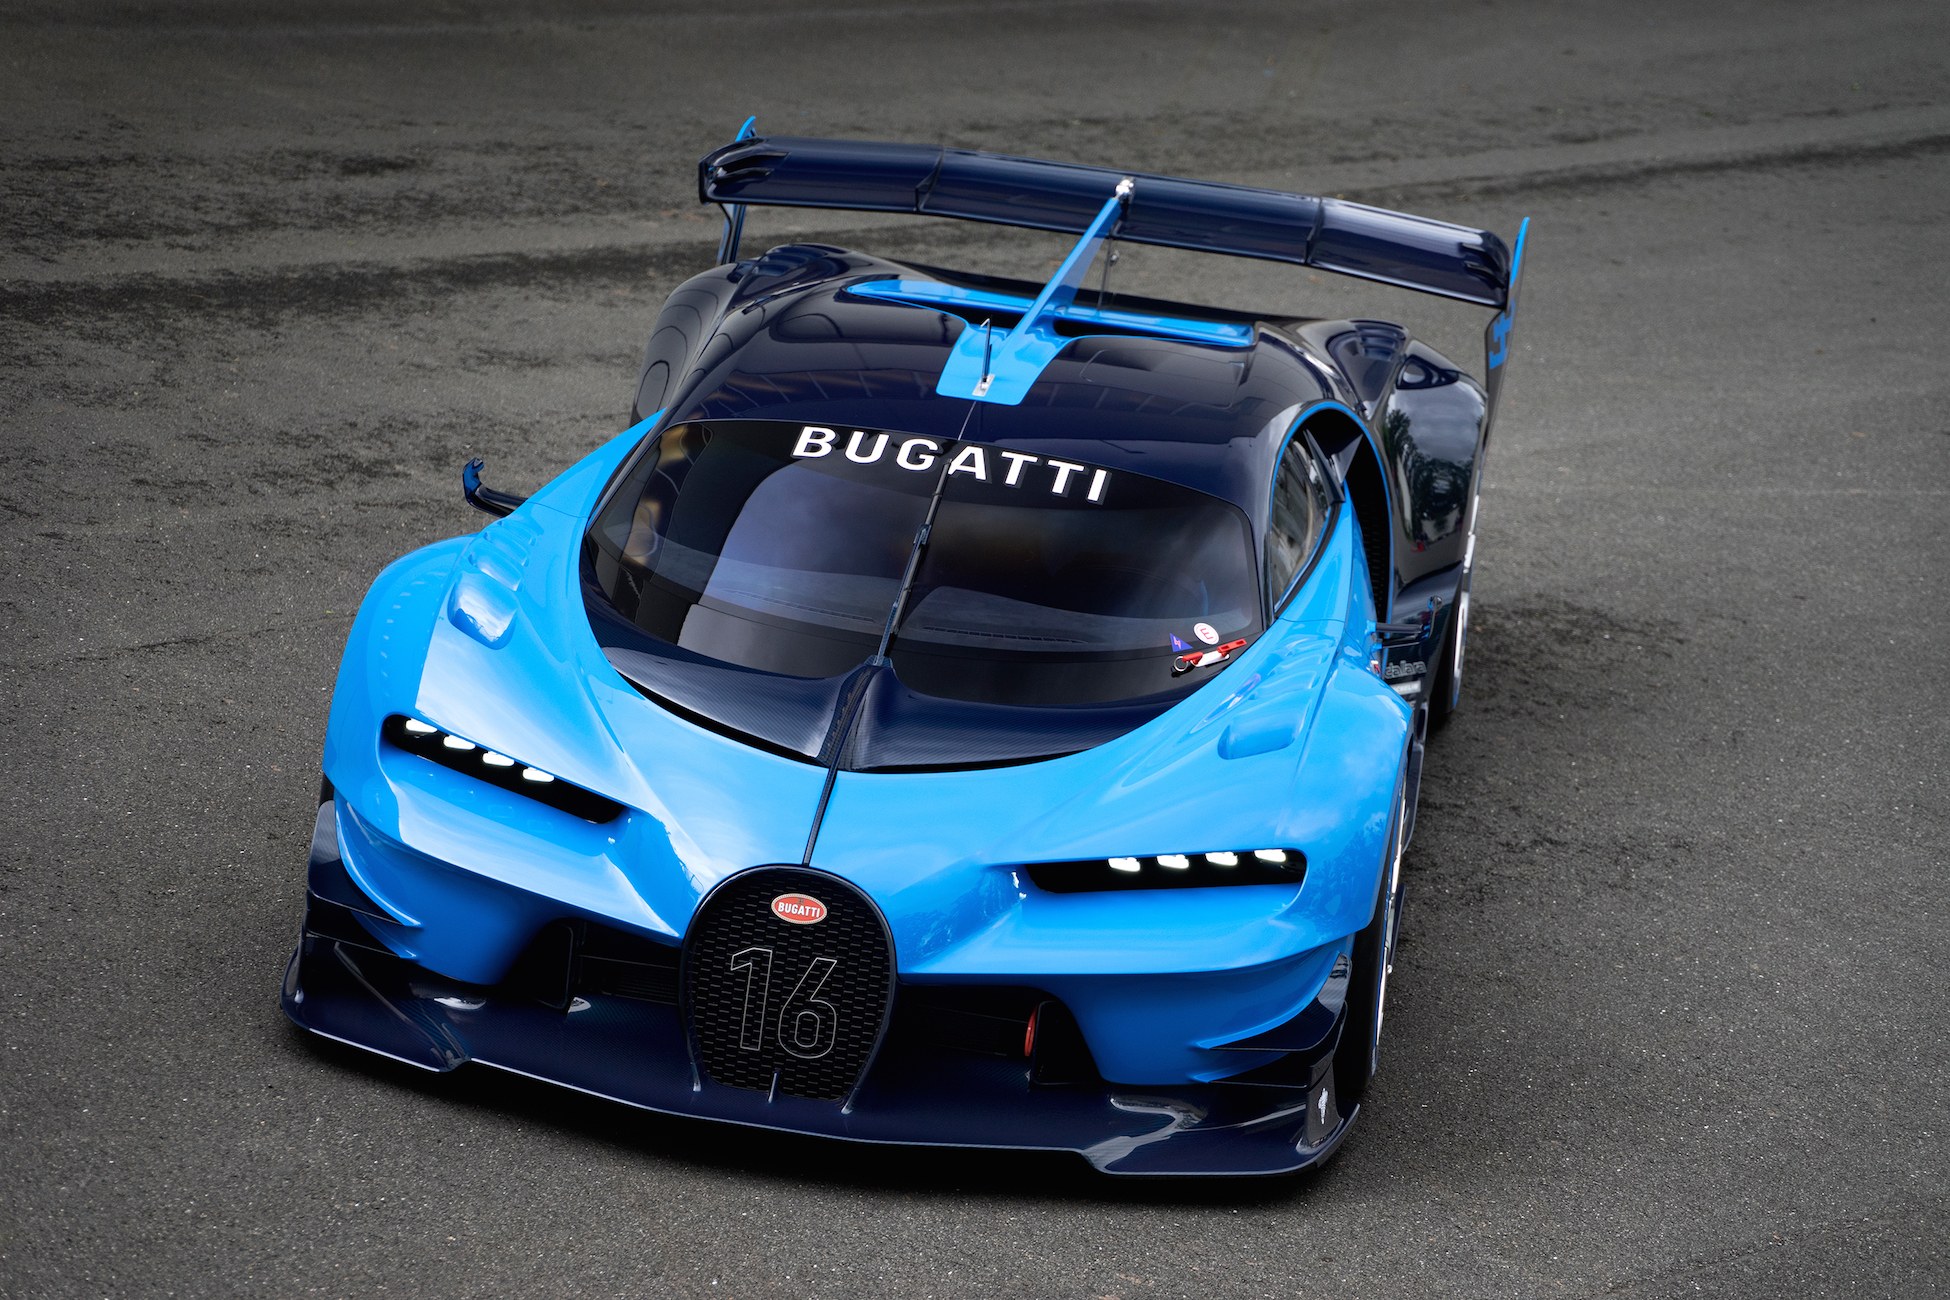 Bugatti vision gt price